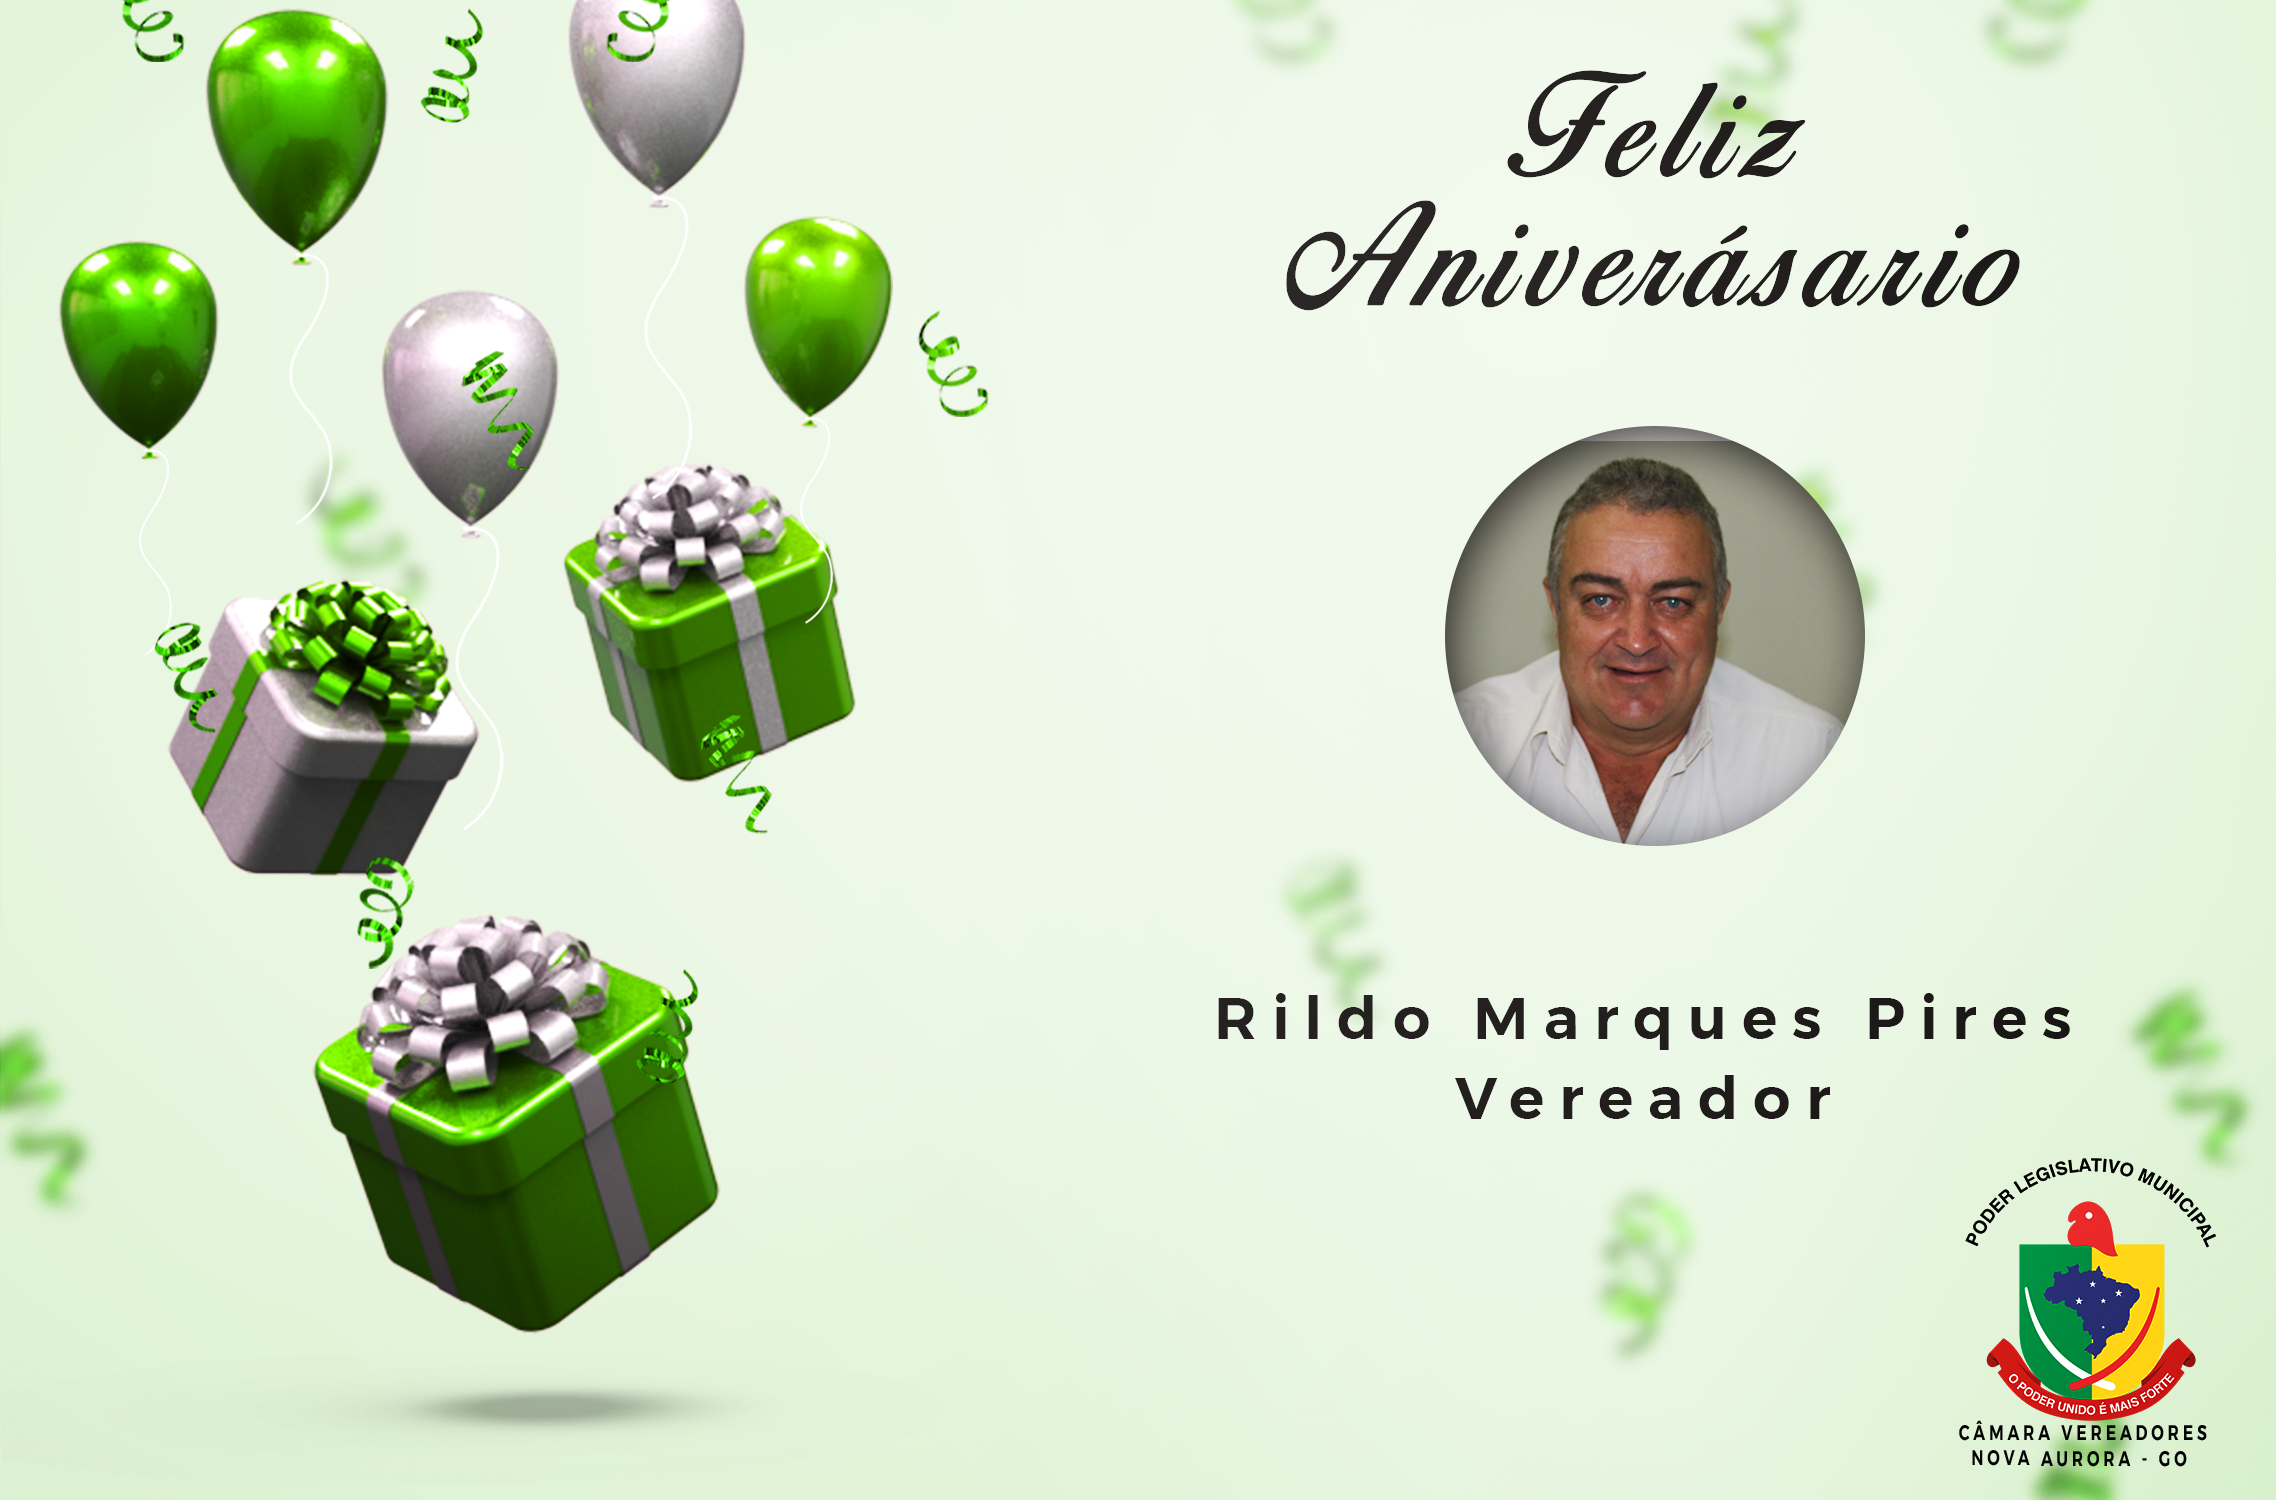 You are currently viewing Parabéns Vereador Rildo Marques Pires